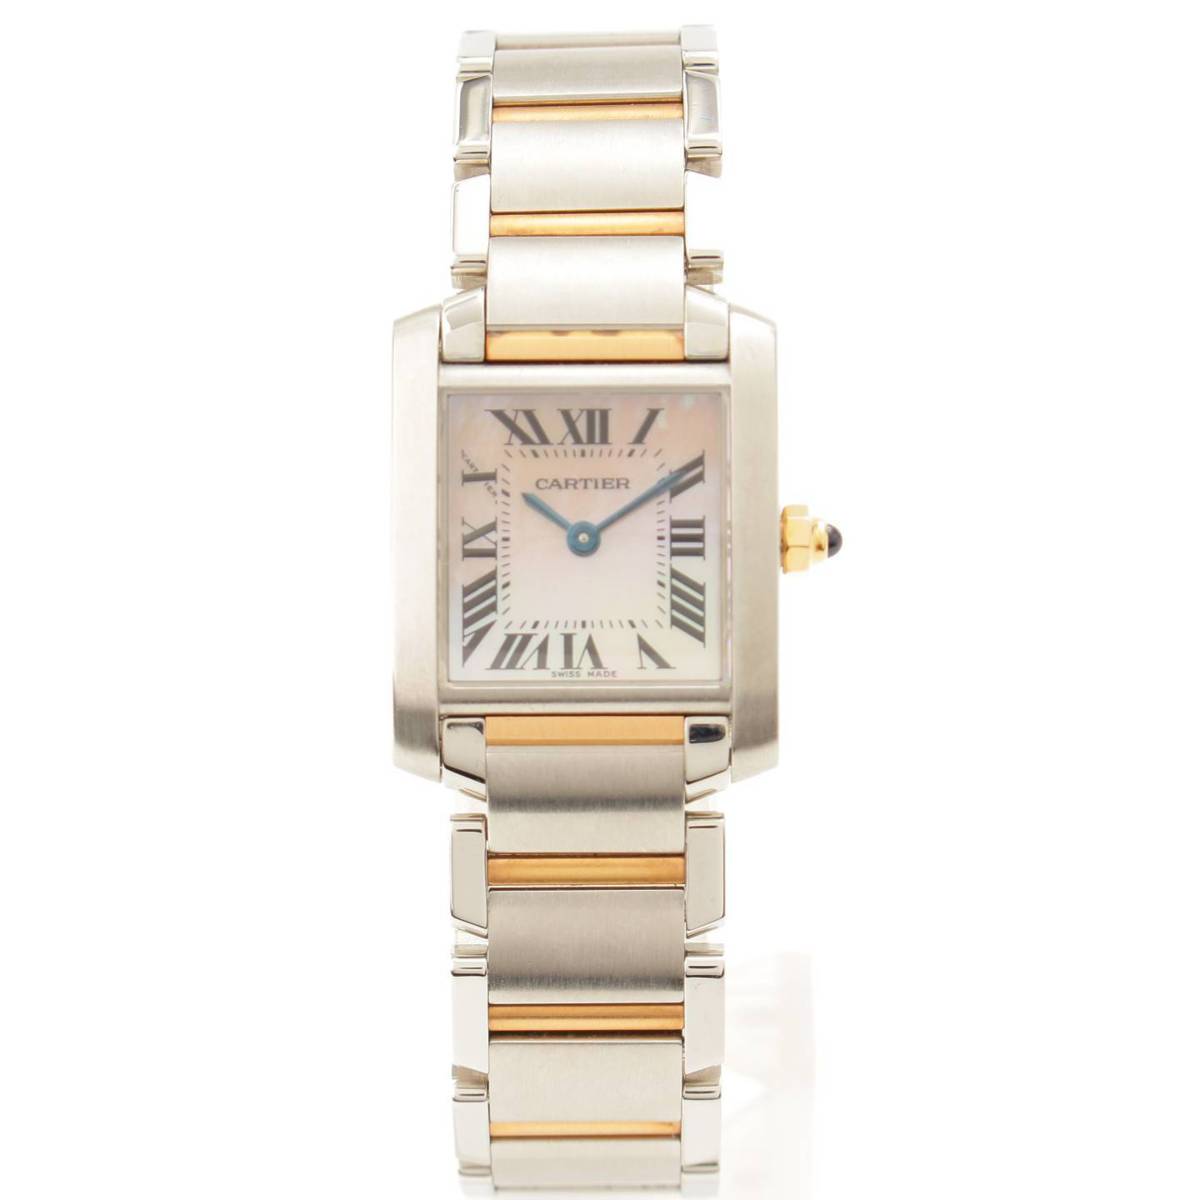 カルティエ(Cartier) タンクフランセーズSM シェル文字盤 腕時計 W51027Q4 シルバー ゴールド 電池交換済